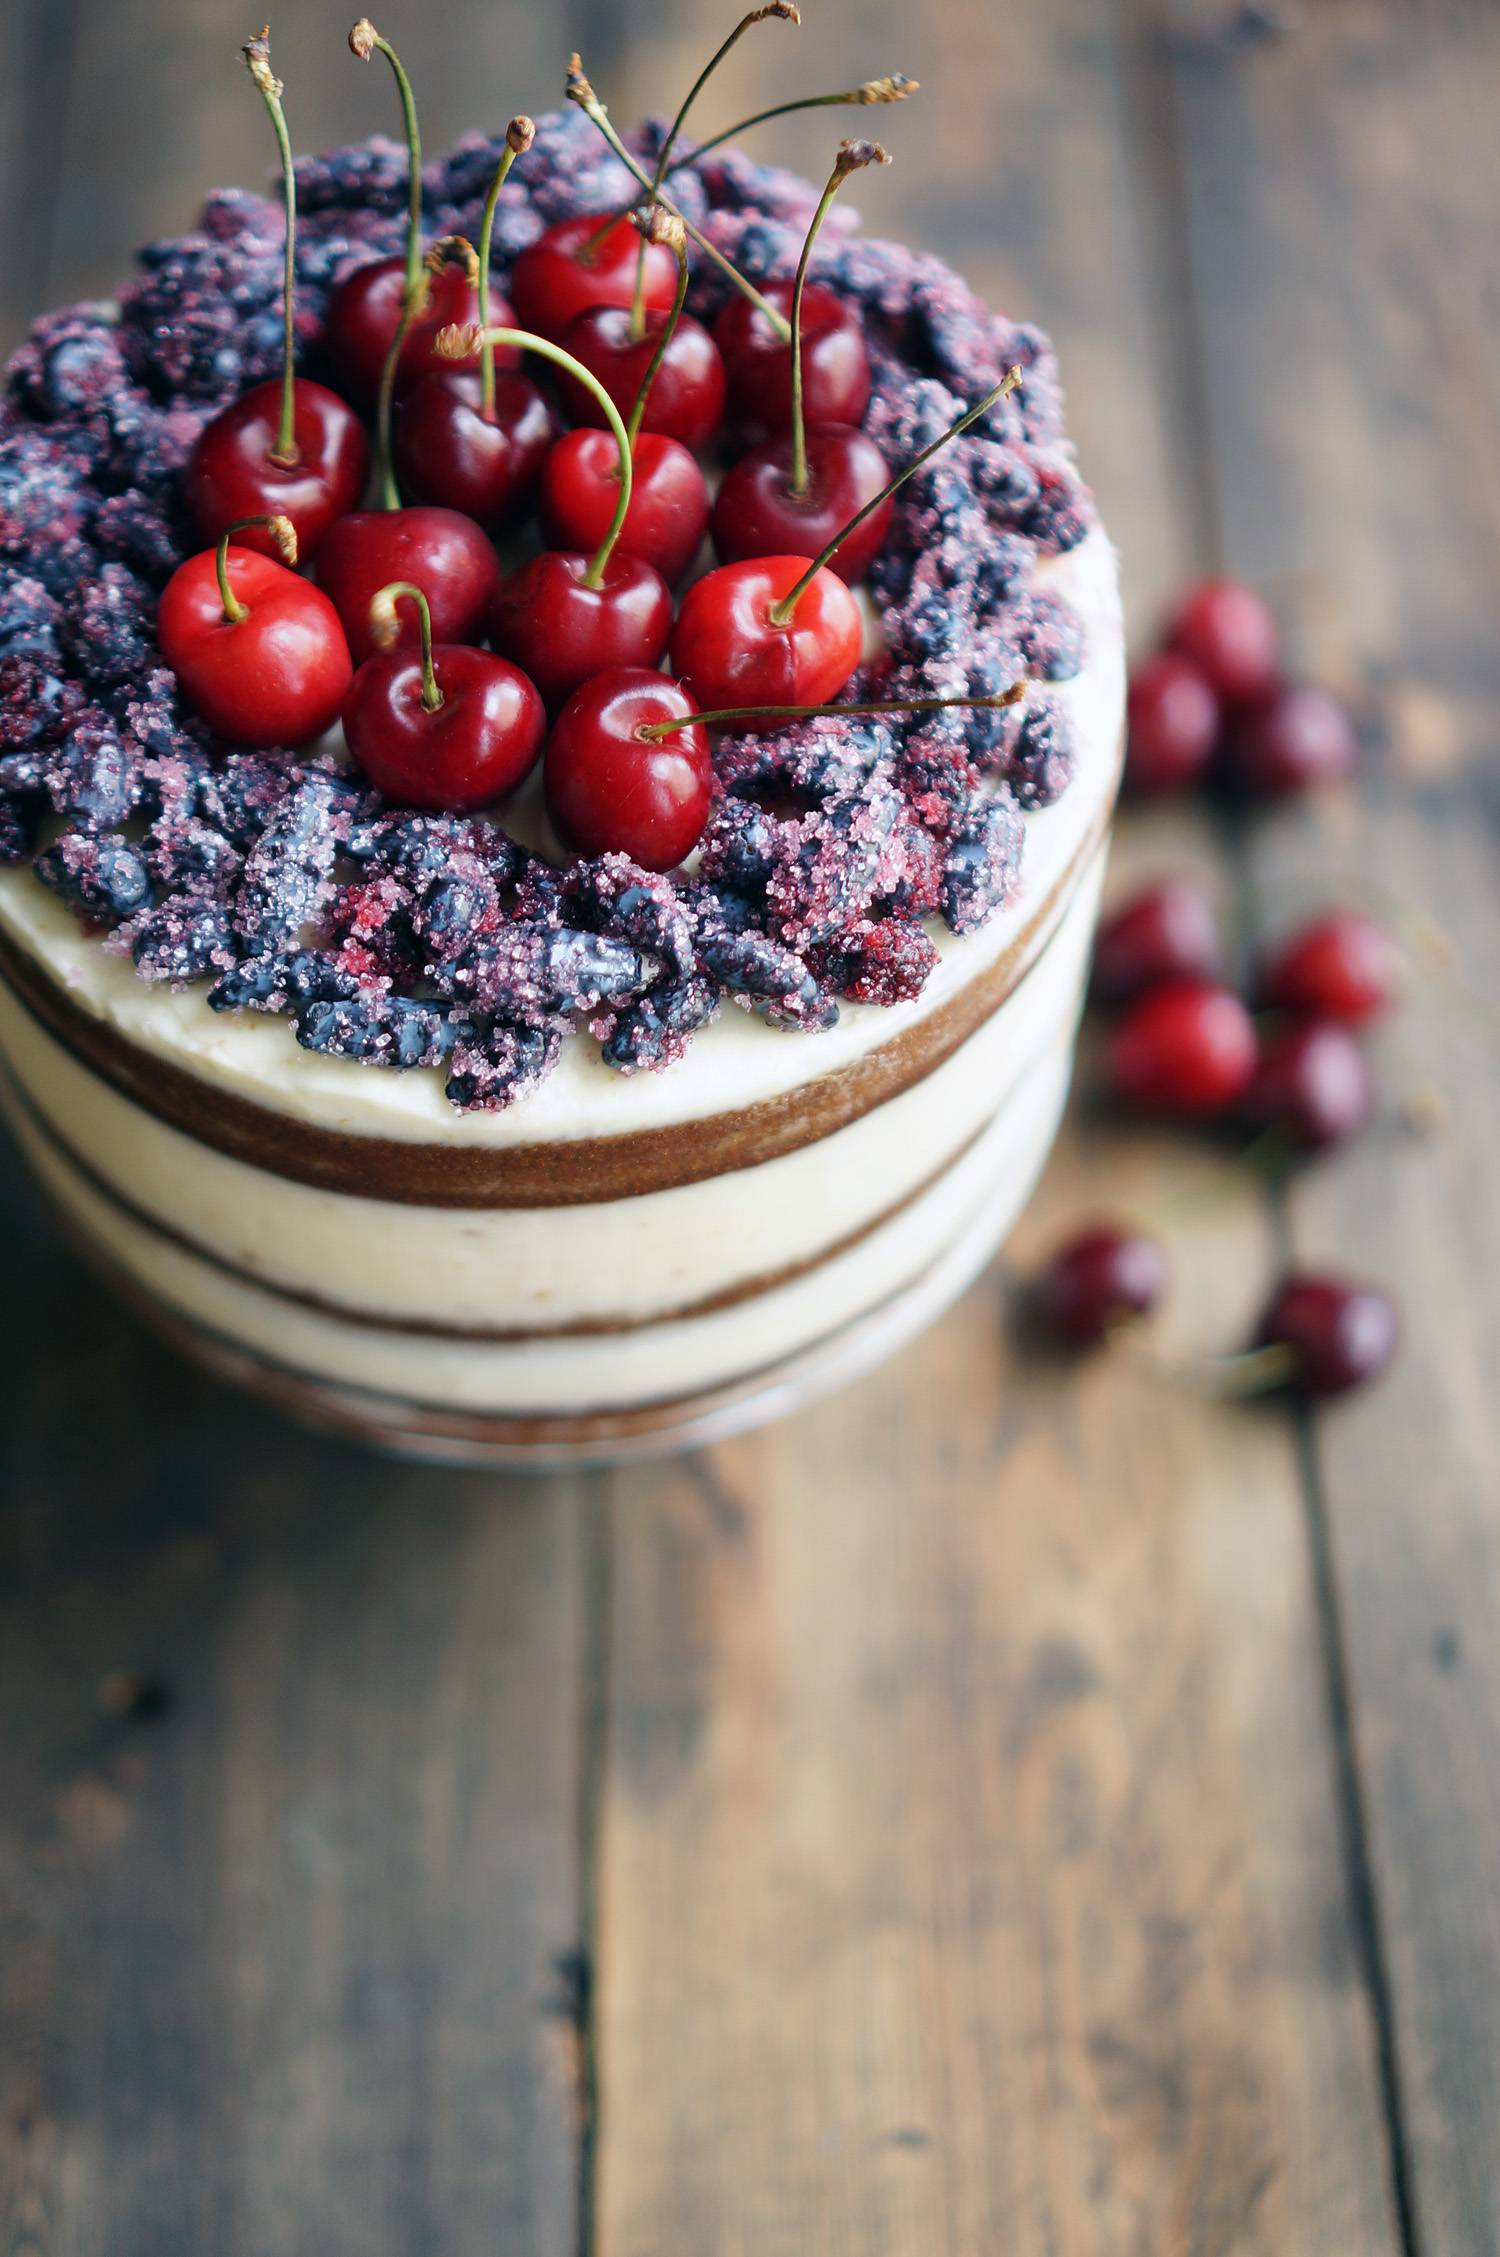 Имбирный голый торт с ягодами, пошаговый фото рецепт, кулинарный блог и интернет-магазин с доставкой по России, andychef.ru